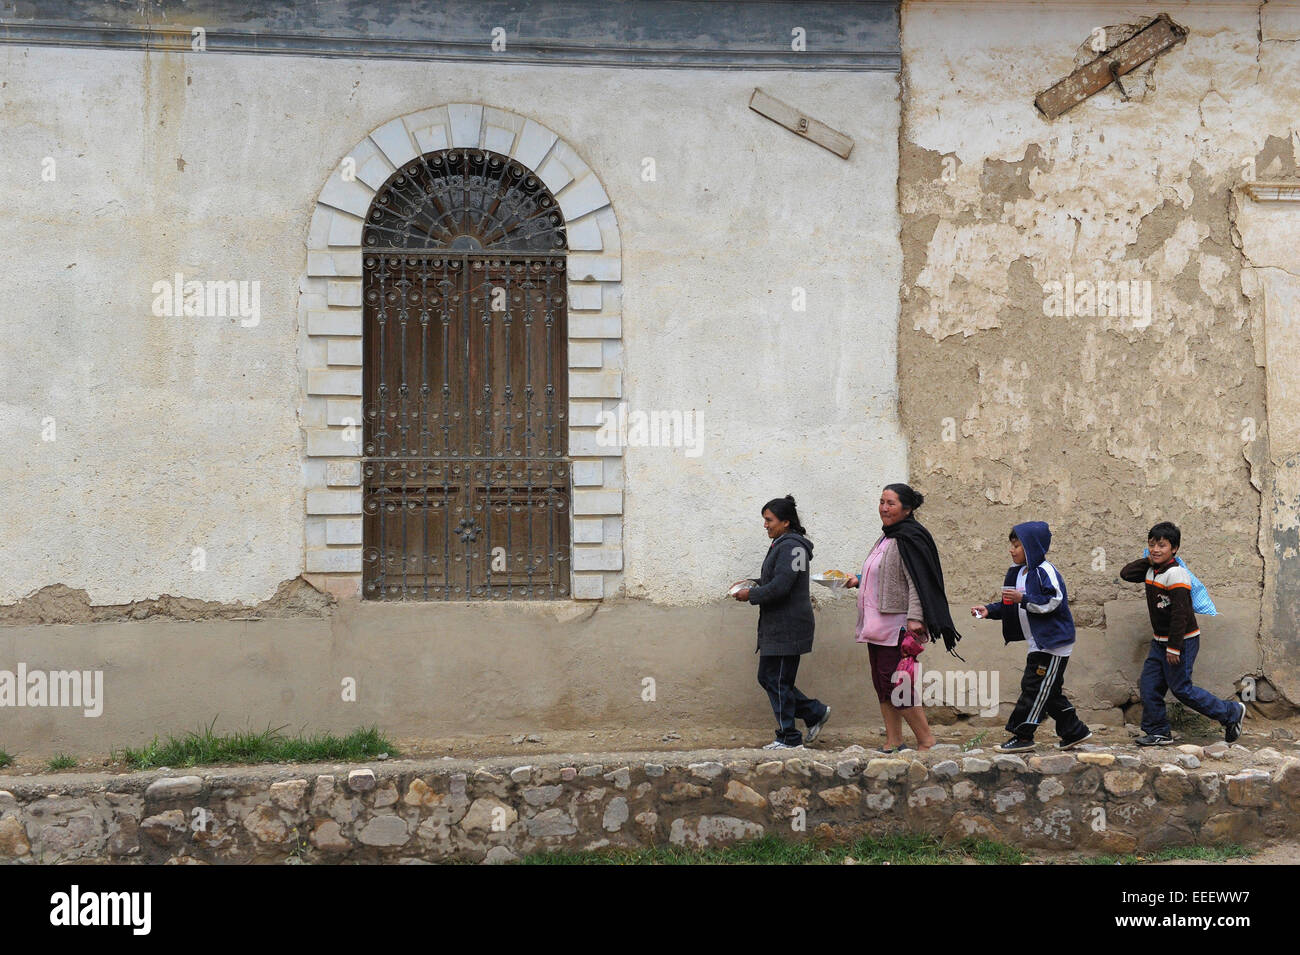 Street scene from colonial city of Tarata, Bolivia. Stock Photo